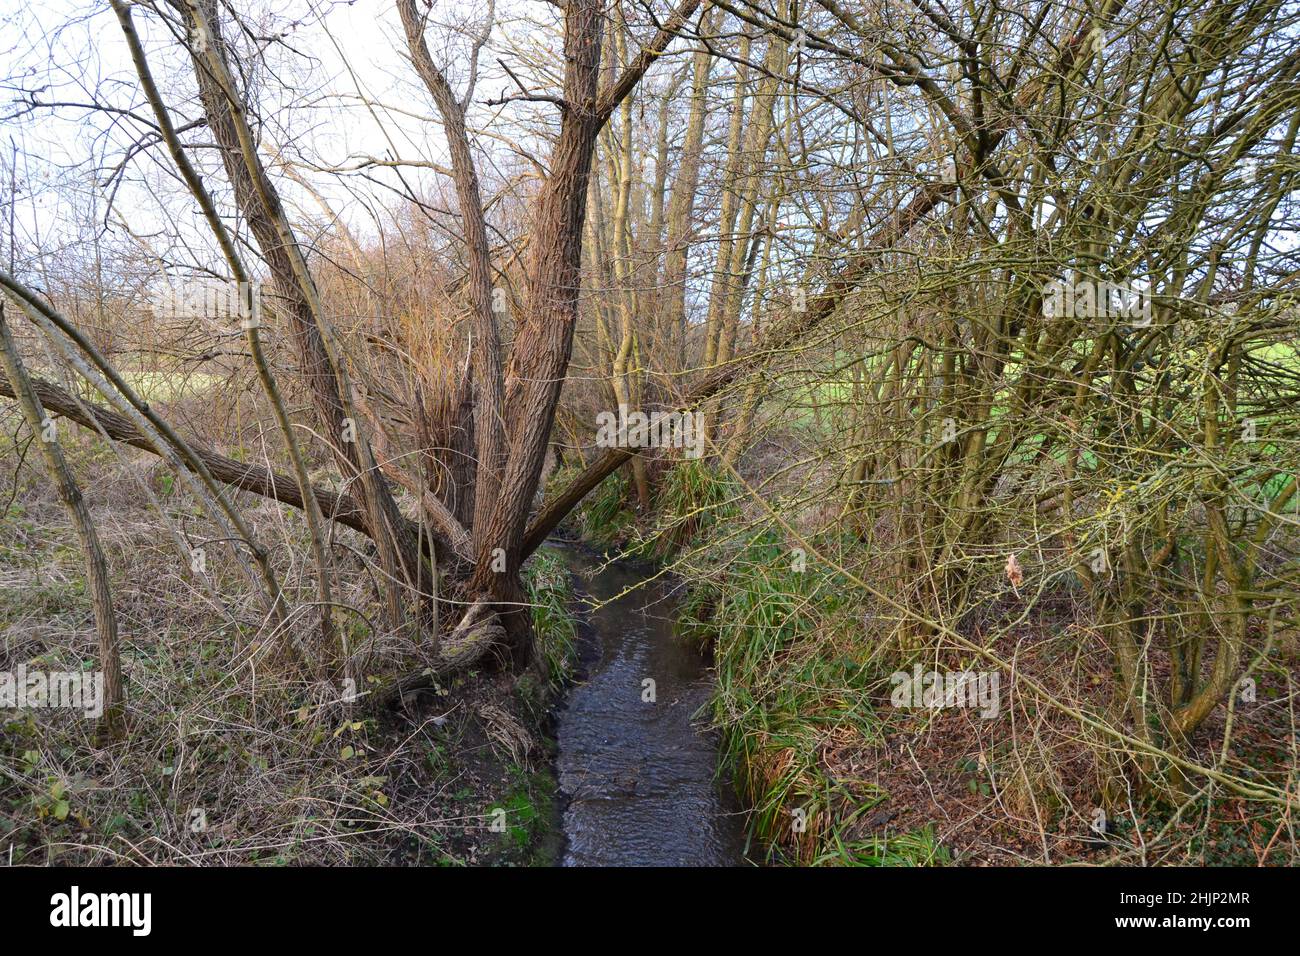 Le ruisseau Kyd en hiver.Petts Wood, Hawkwood Estate, Tong Farm.Ce ruisseau s'élève à Locksbottom et devient la rivière Quaggy, un affluent de la Tamise Banque D'Images